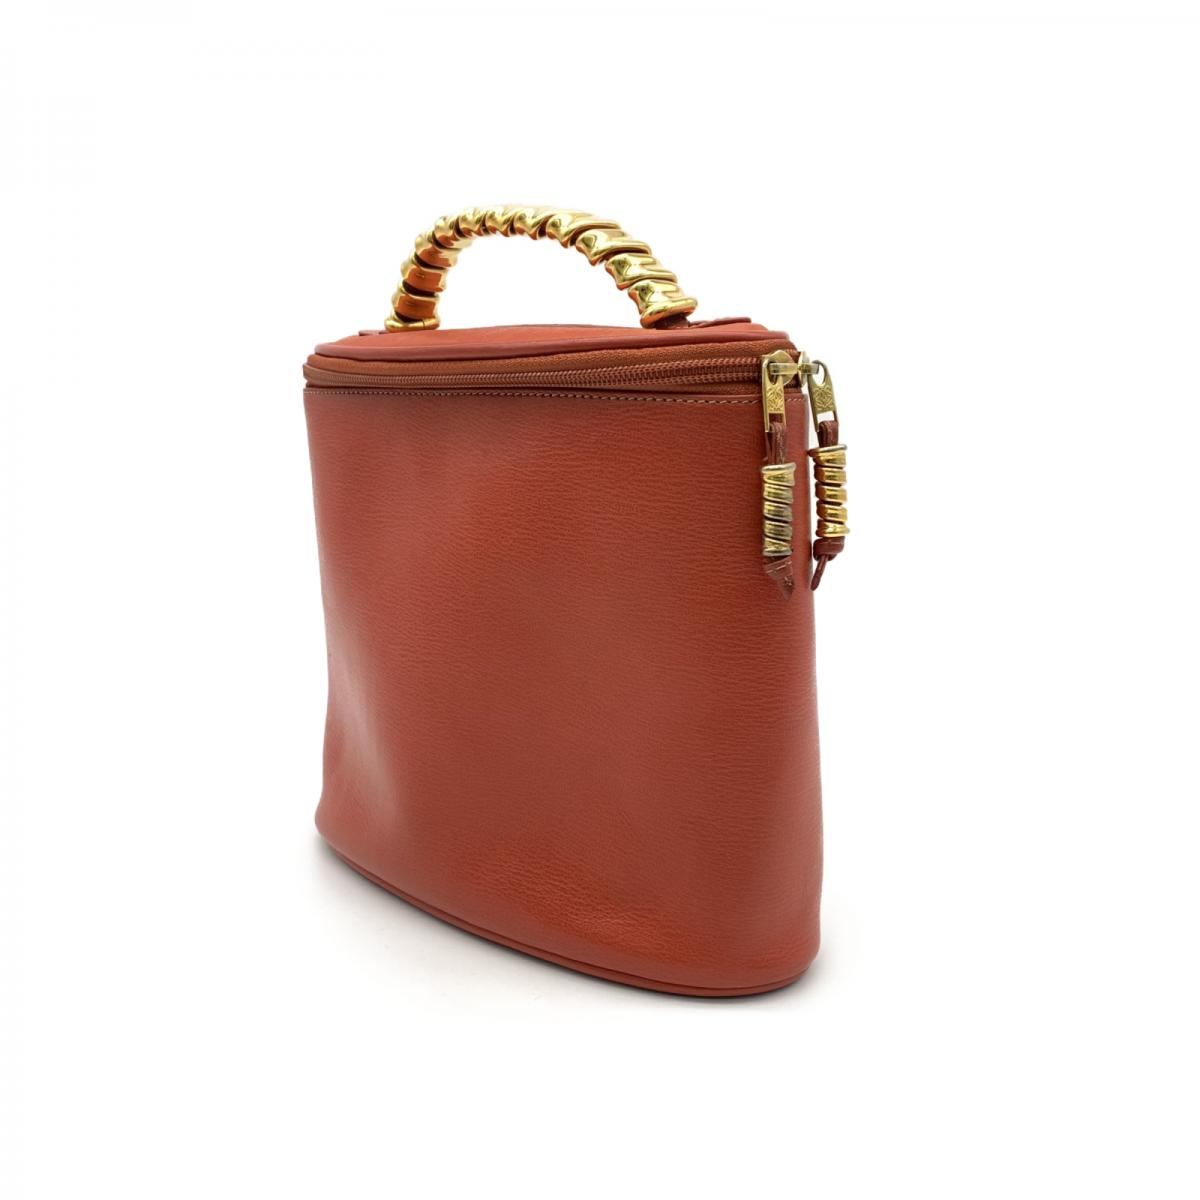 Velazquez Leather Cosmetic Handbag